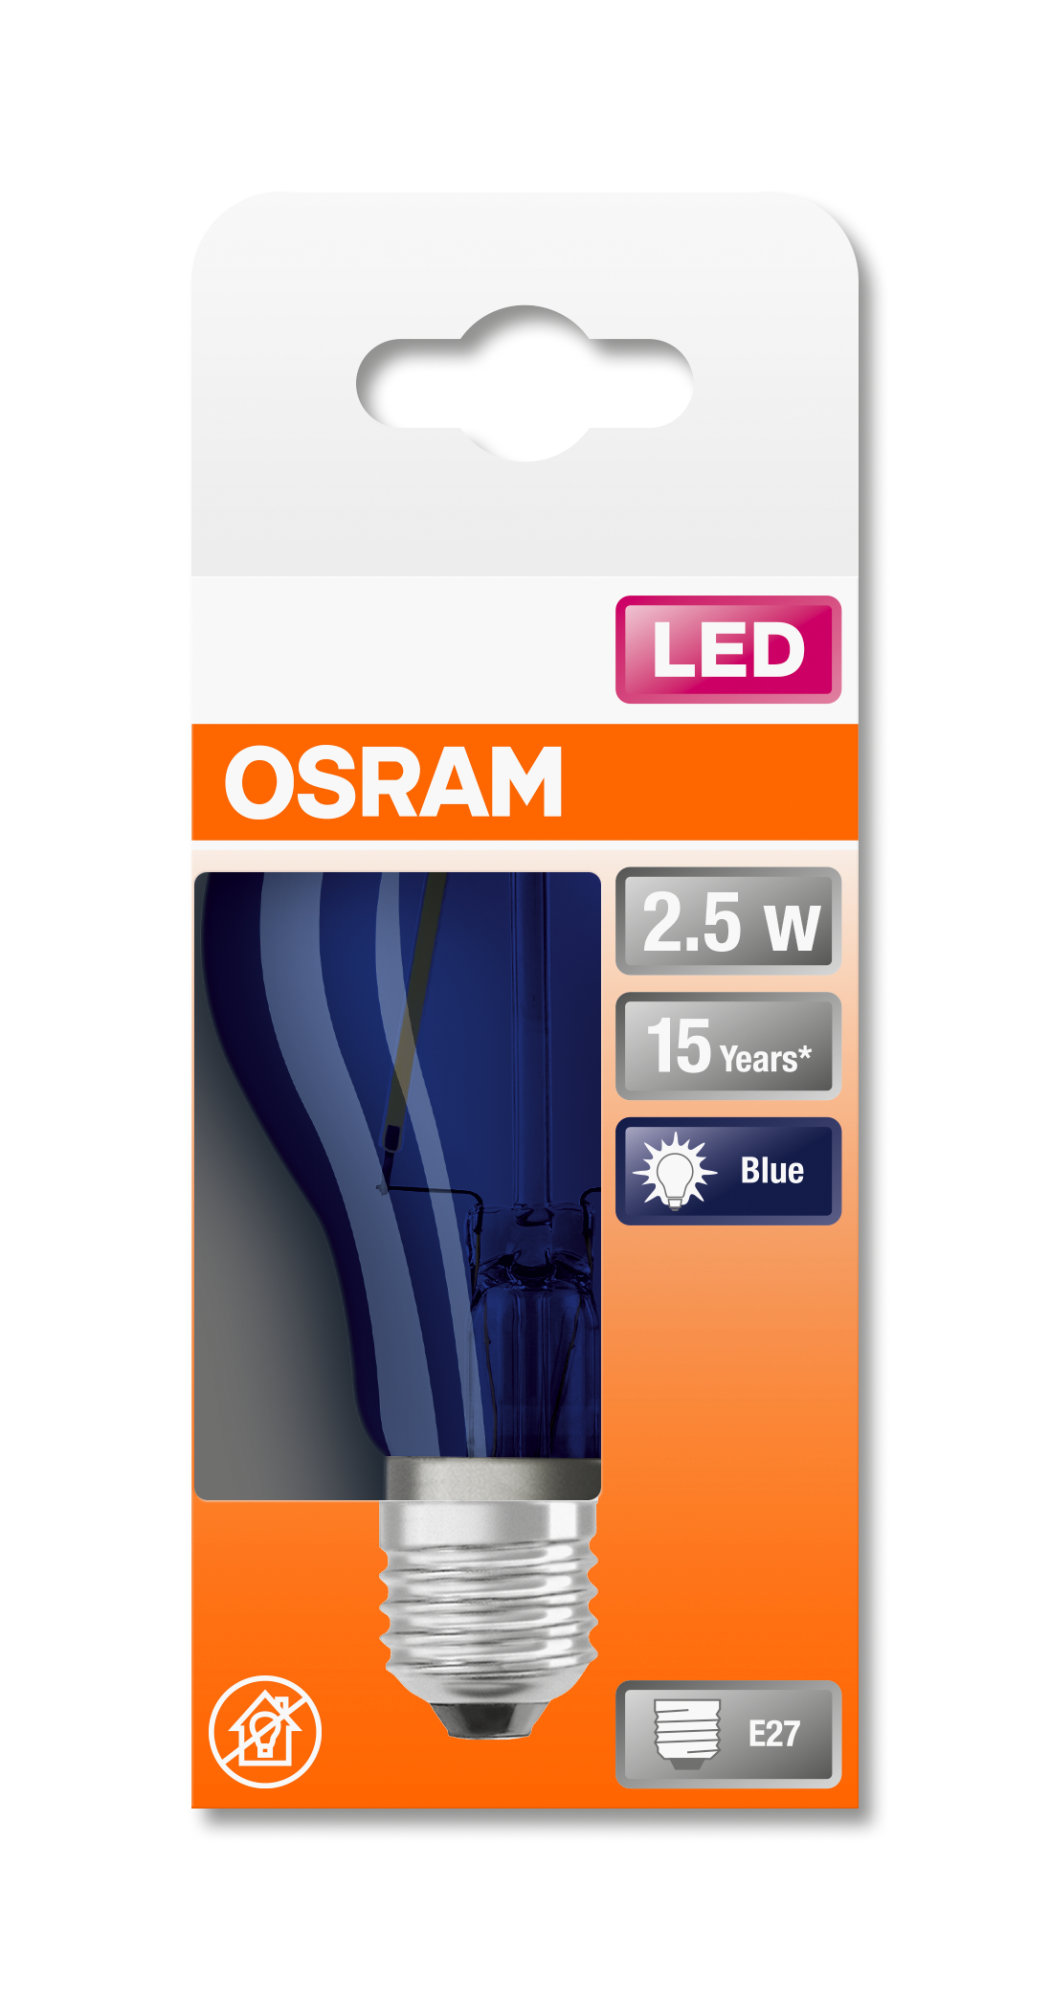 Bec Osram LED SUPERSTAR CLA 15 DécorBlue non-dim 2,5W 827 E27 136lm 2700K